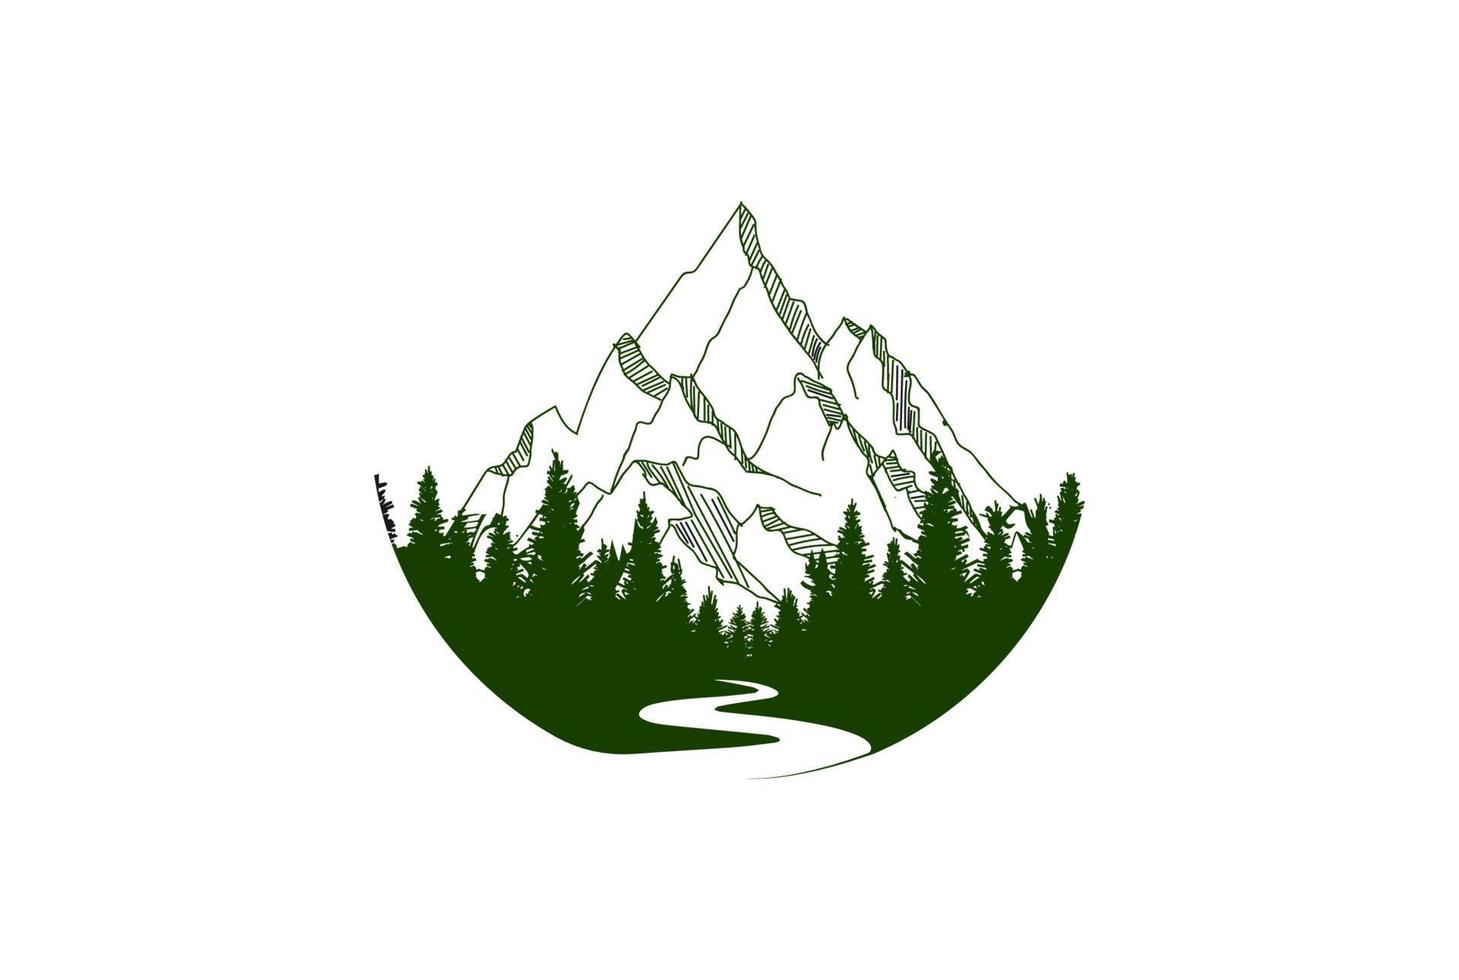 Pine Cedar Spruce Conifer Evergreen Fir Larch Cypress Hemlock Trees Forest Badge Emblem for Outdoor Camp Adventure Logo Design Vector